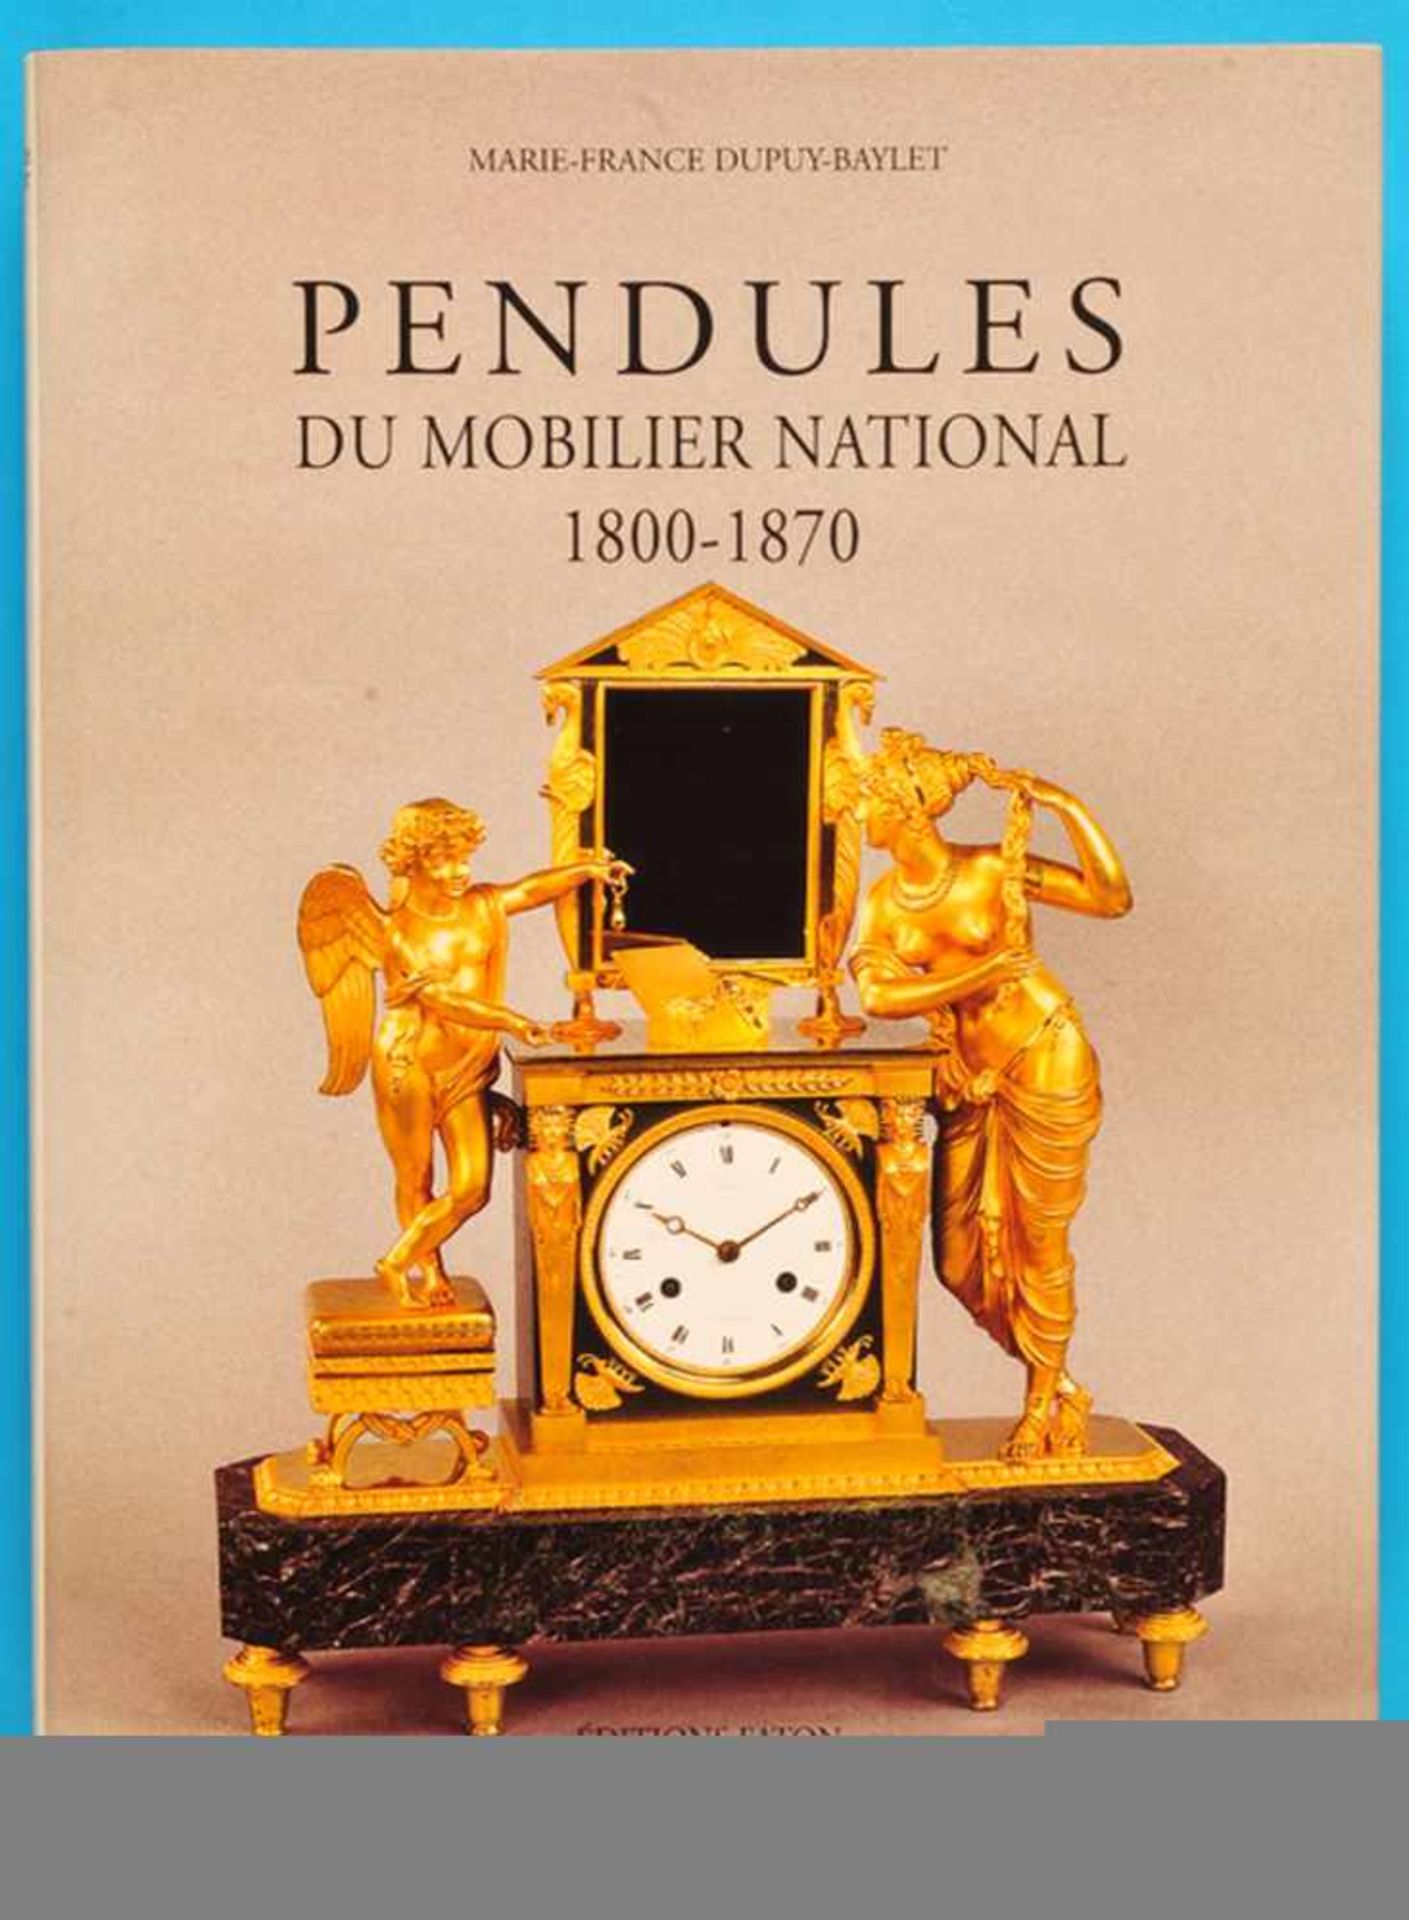 Marie-France Dupuy-Baylet, Pendules du Mobilier National 1800-1870, 2006, 240 Seiten mit vielen